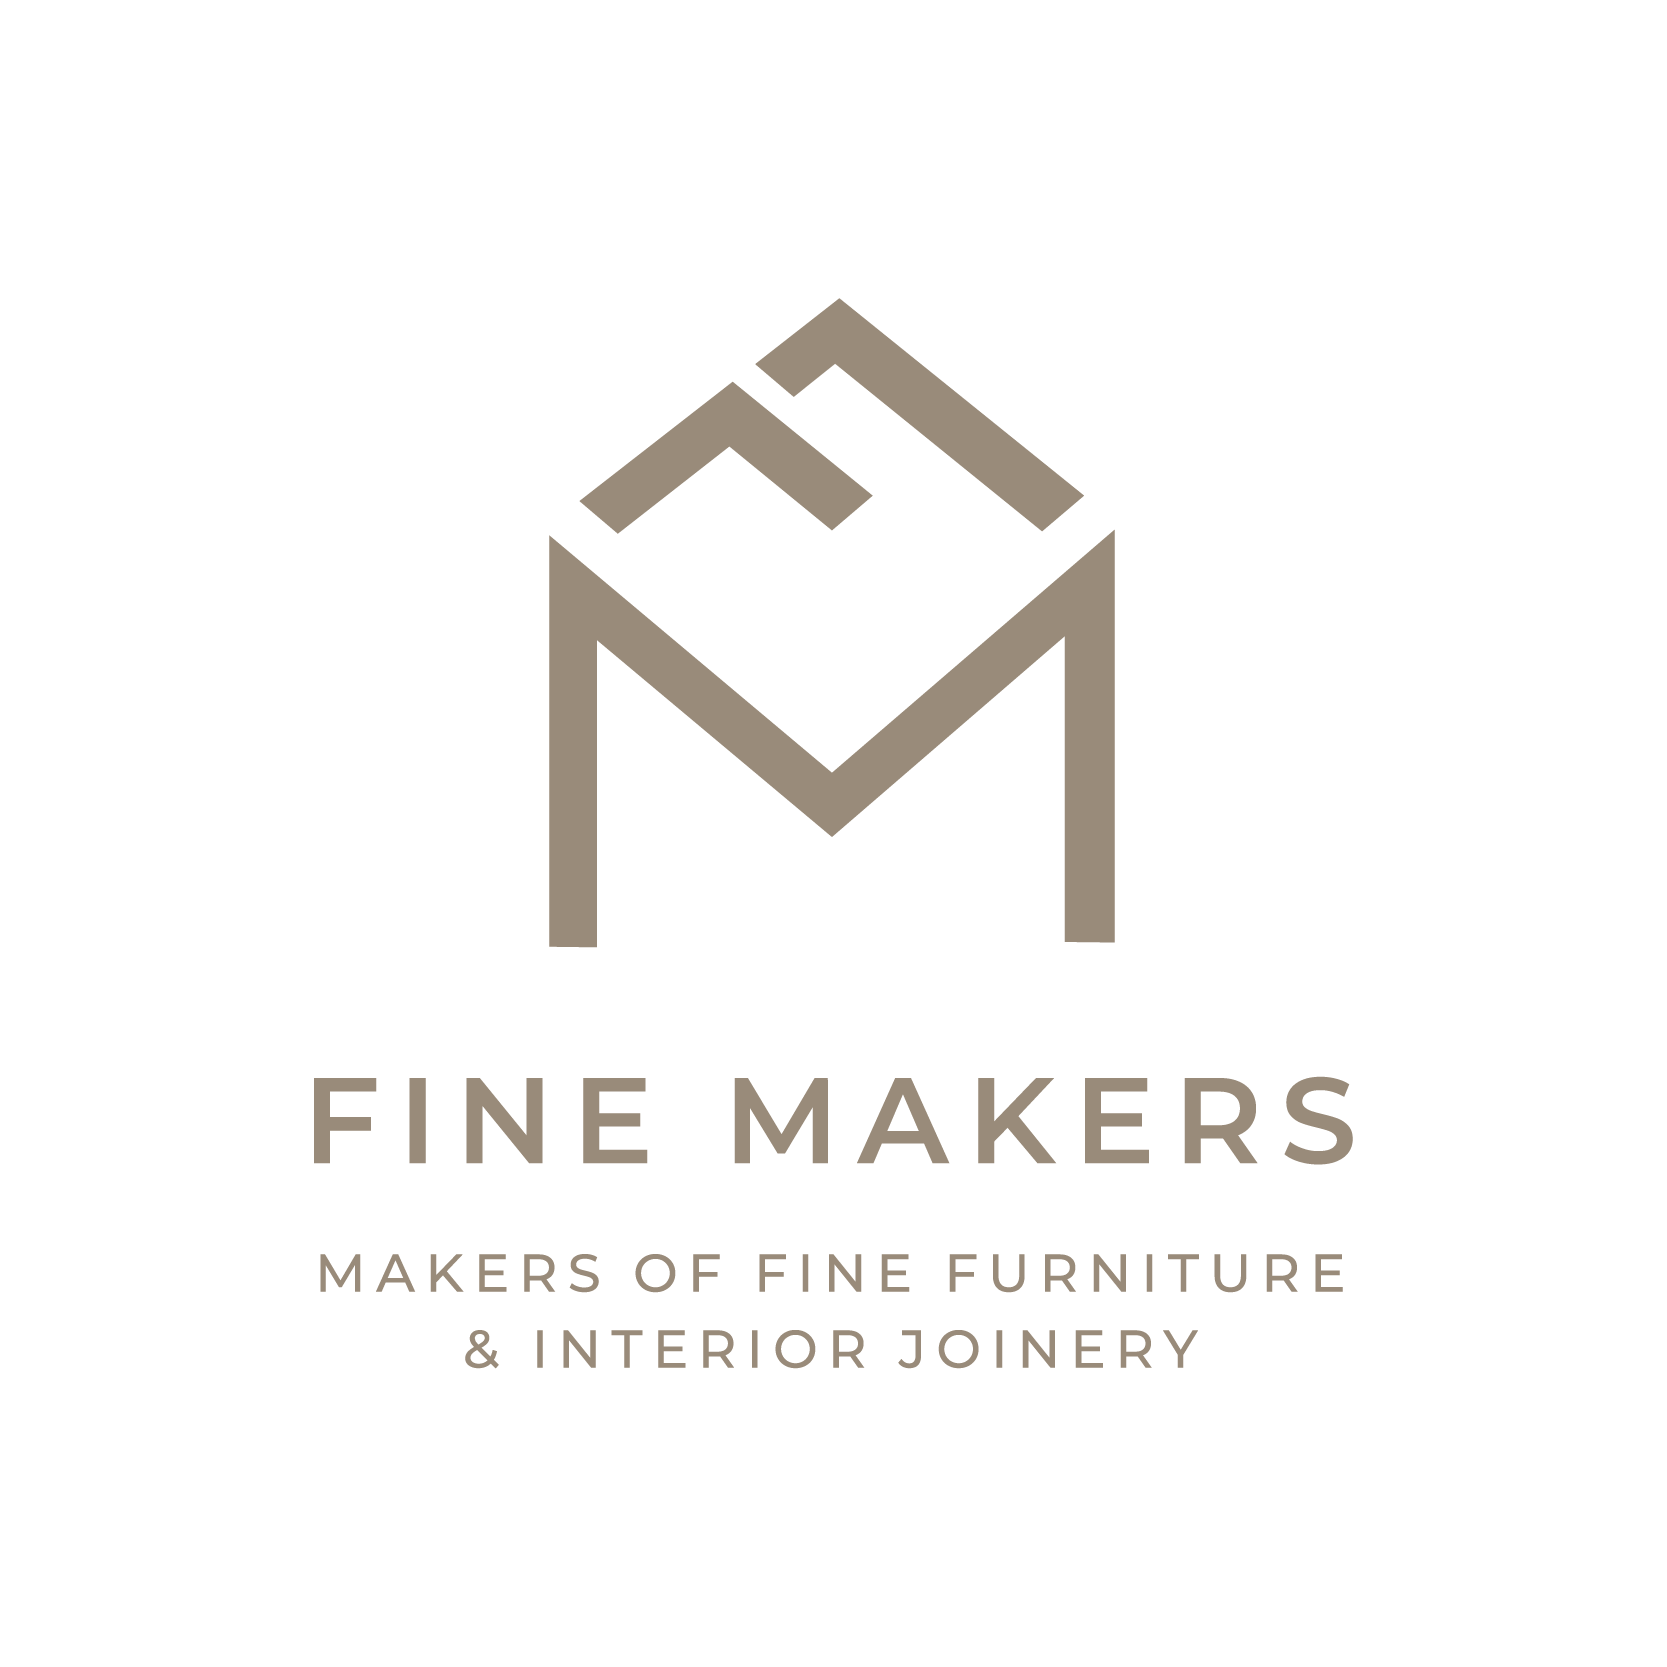 Logo Design for Craft Furniture Maker